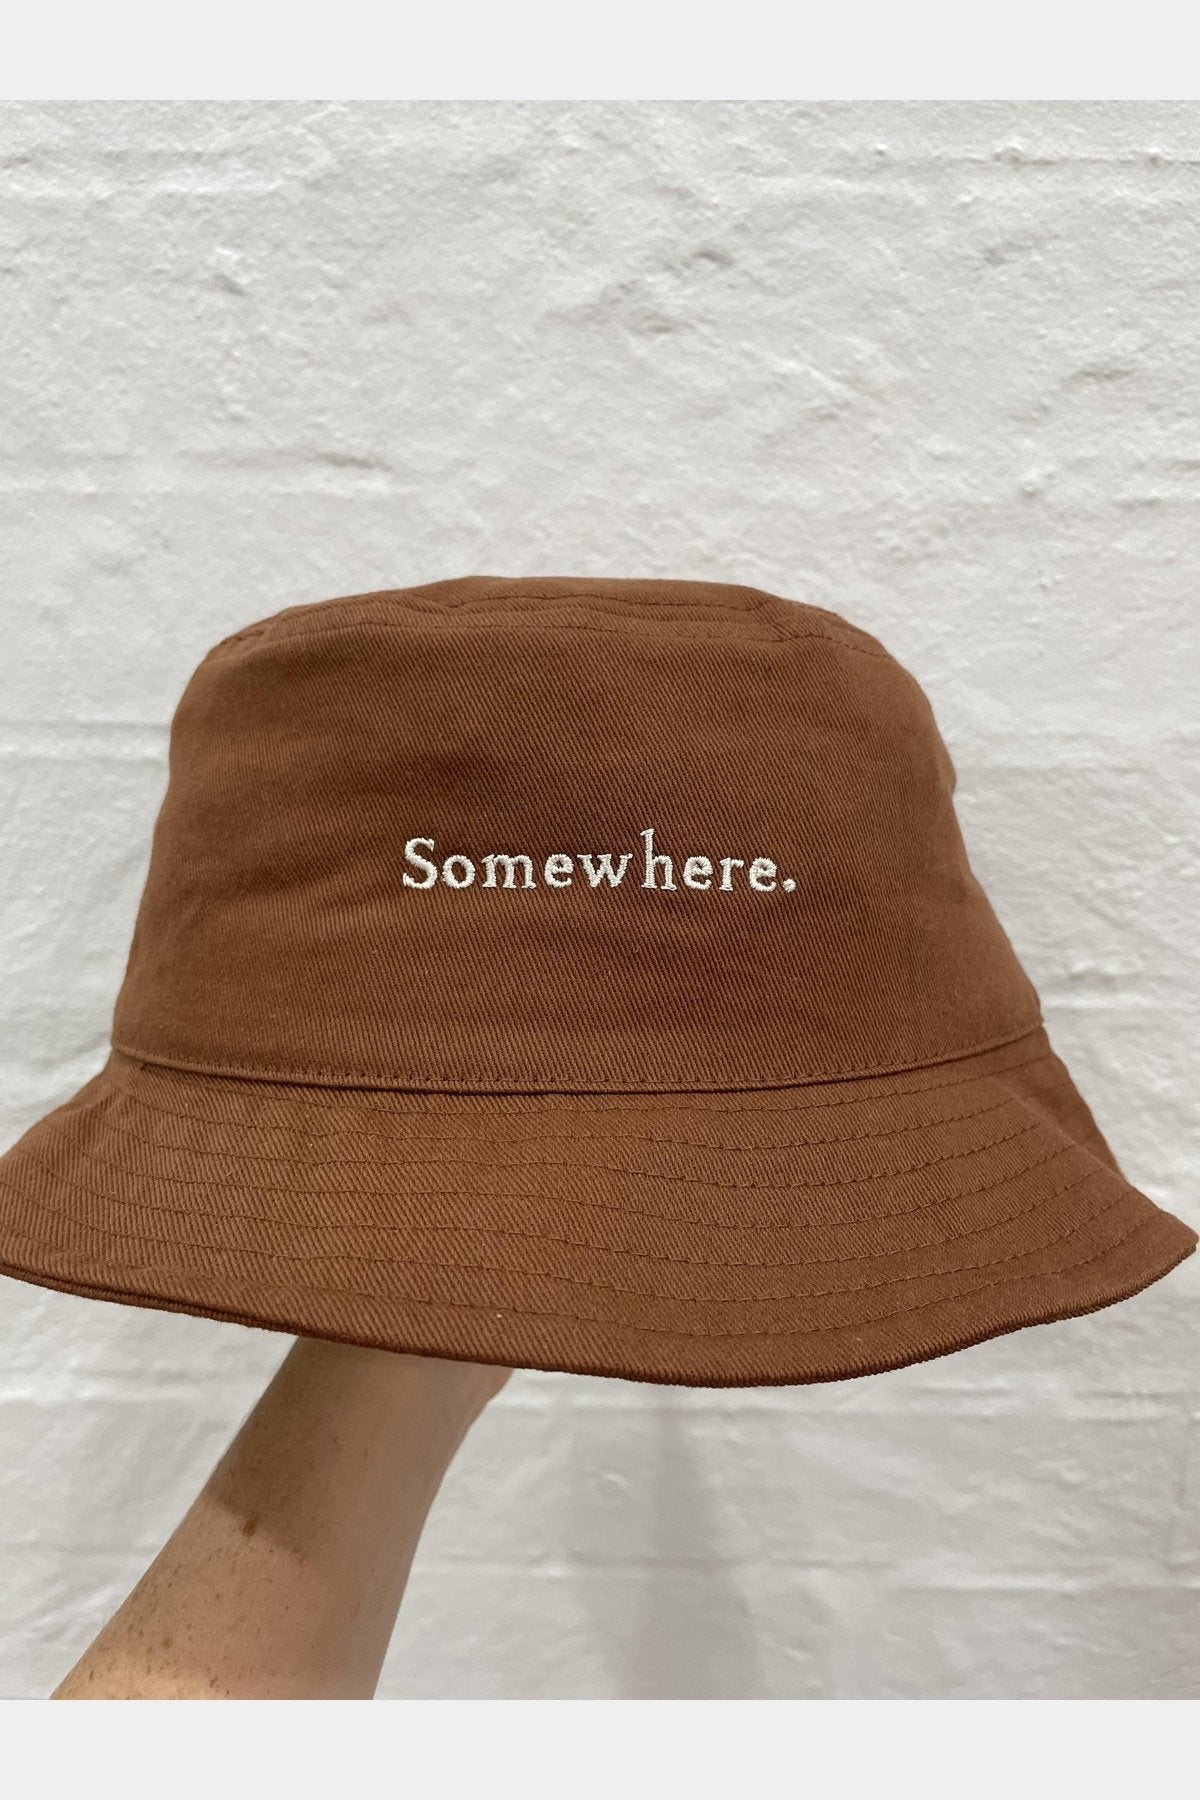 Somewhere bucket hat - chestnut